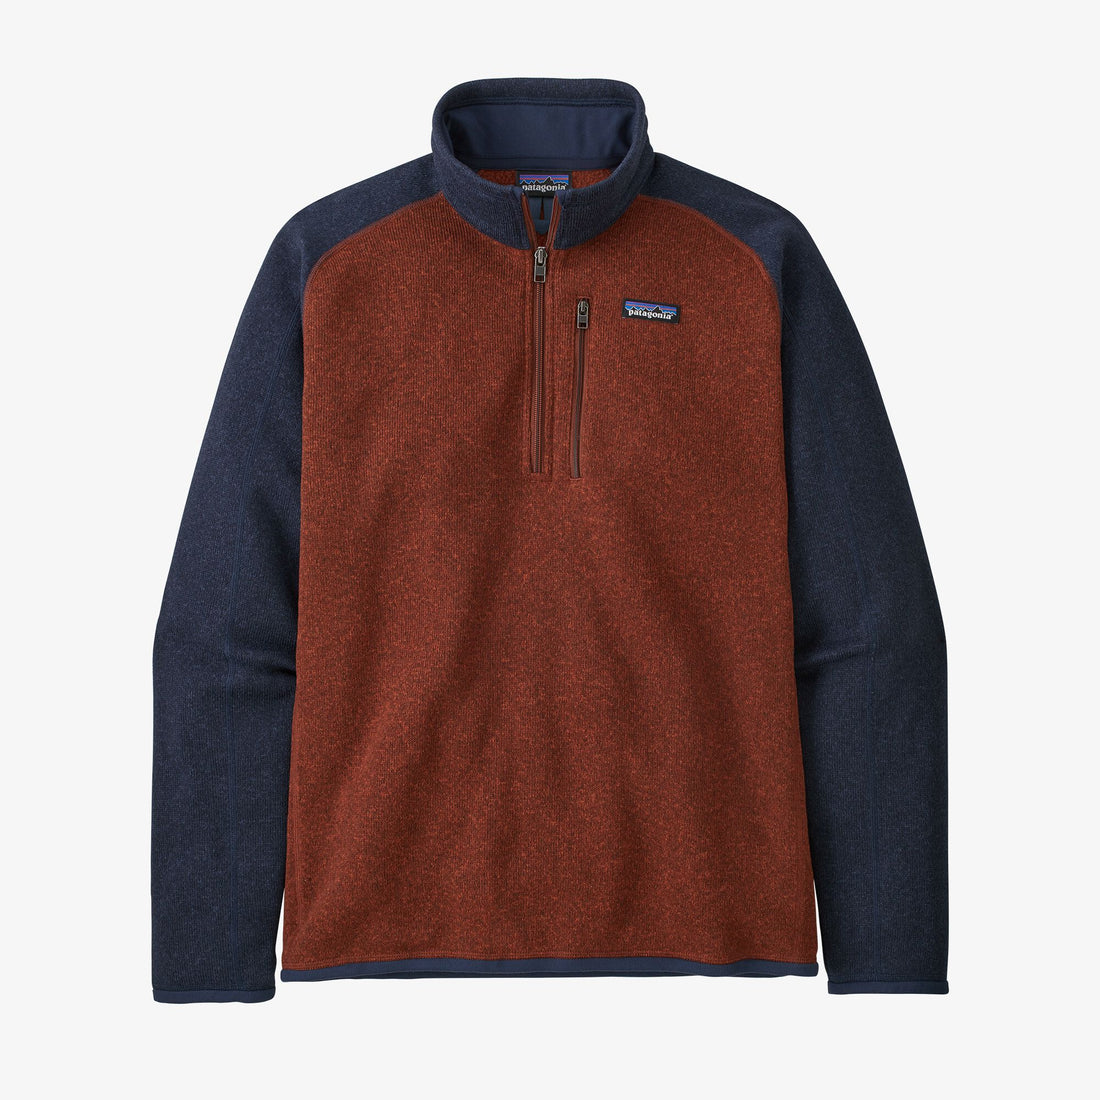 Better Sweater 1/4 Zip Fleece - Barn Red/New Navy